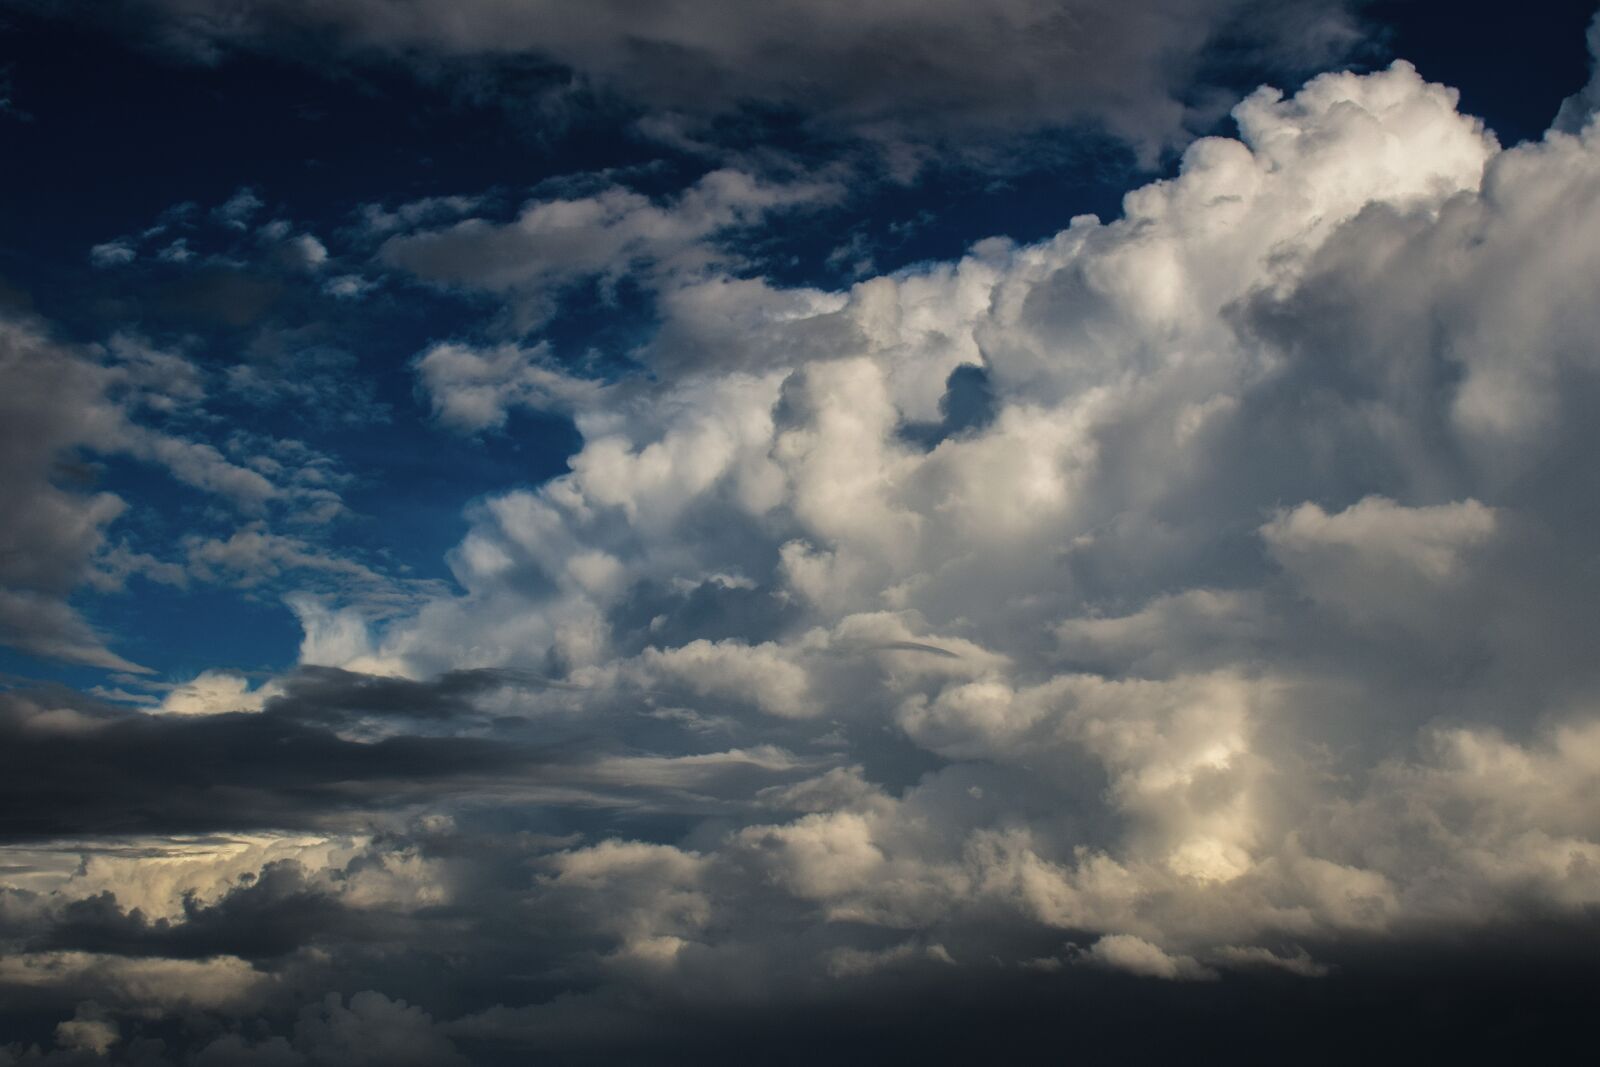 Nikon D3300 sample photo. Clouds, cumulus, nature photography